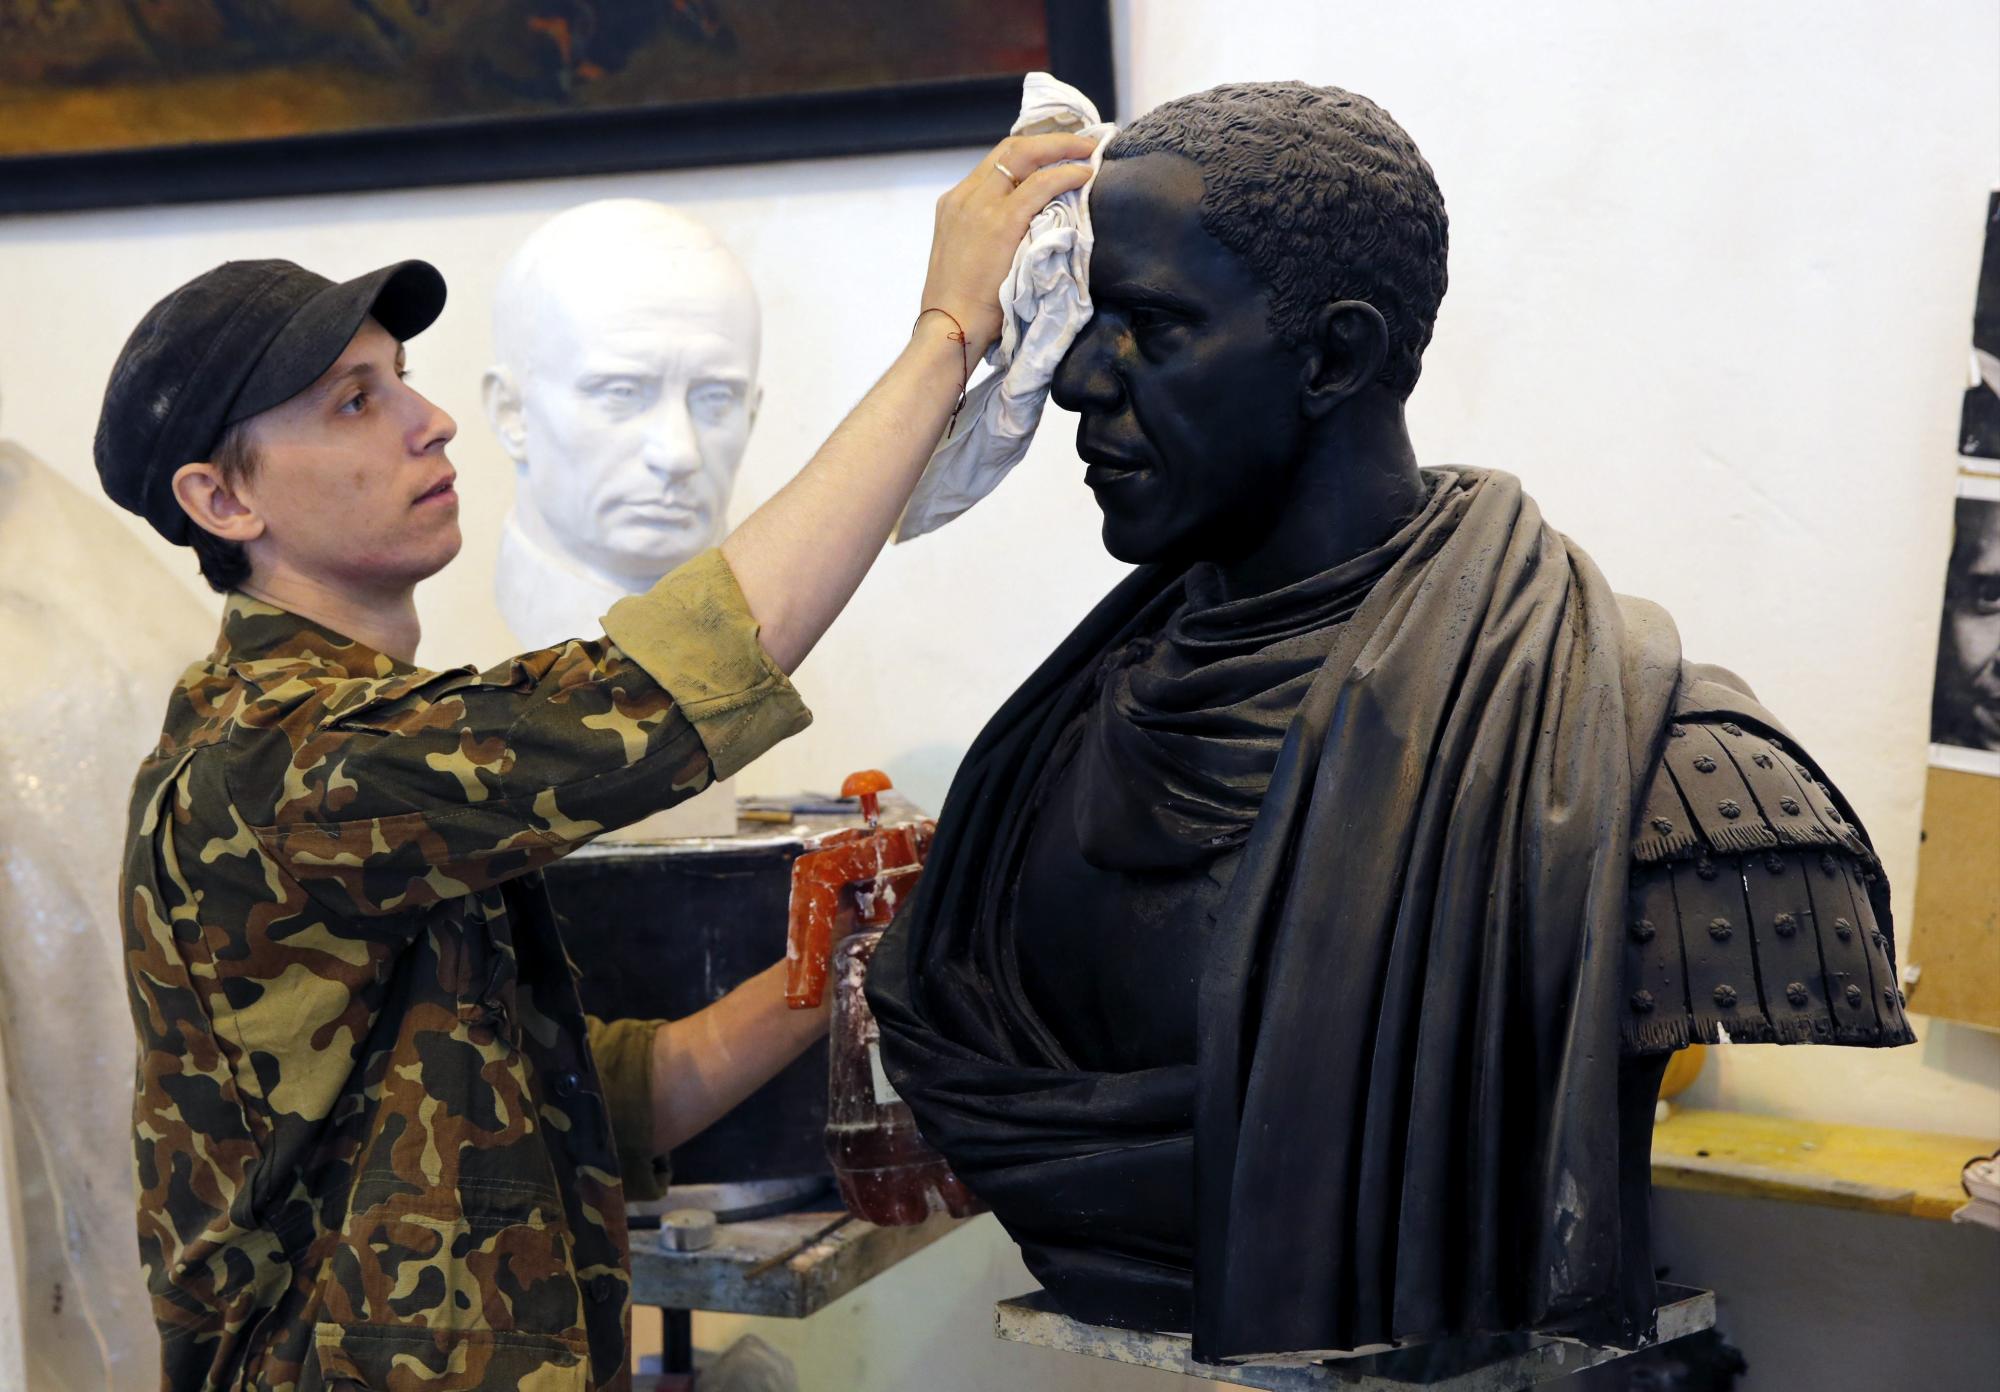 El escultor ruso Pavel Greshnikov da los últimos retoques a un busto del presidente estadounidense, Barack Obama, como emperador roman en su taller en San Petersburgo, Rusia. 